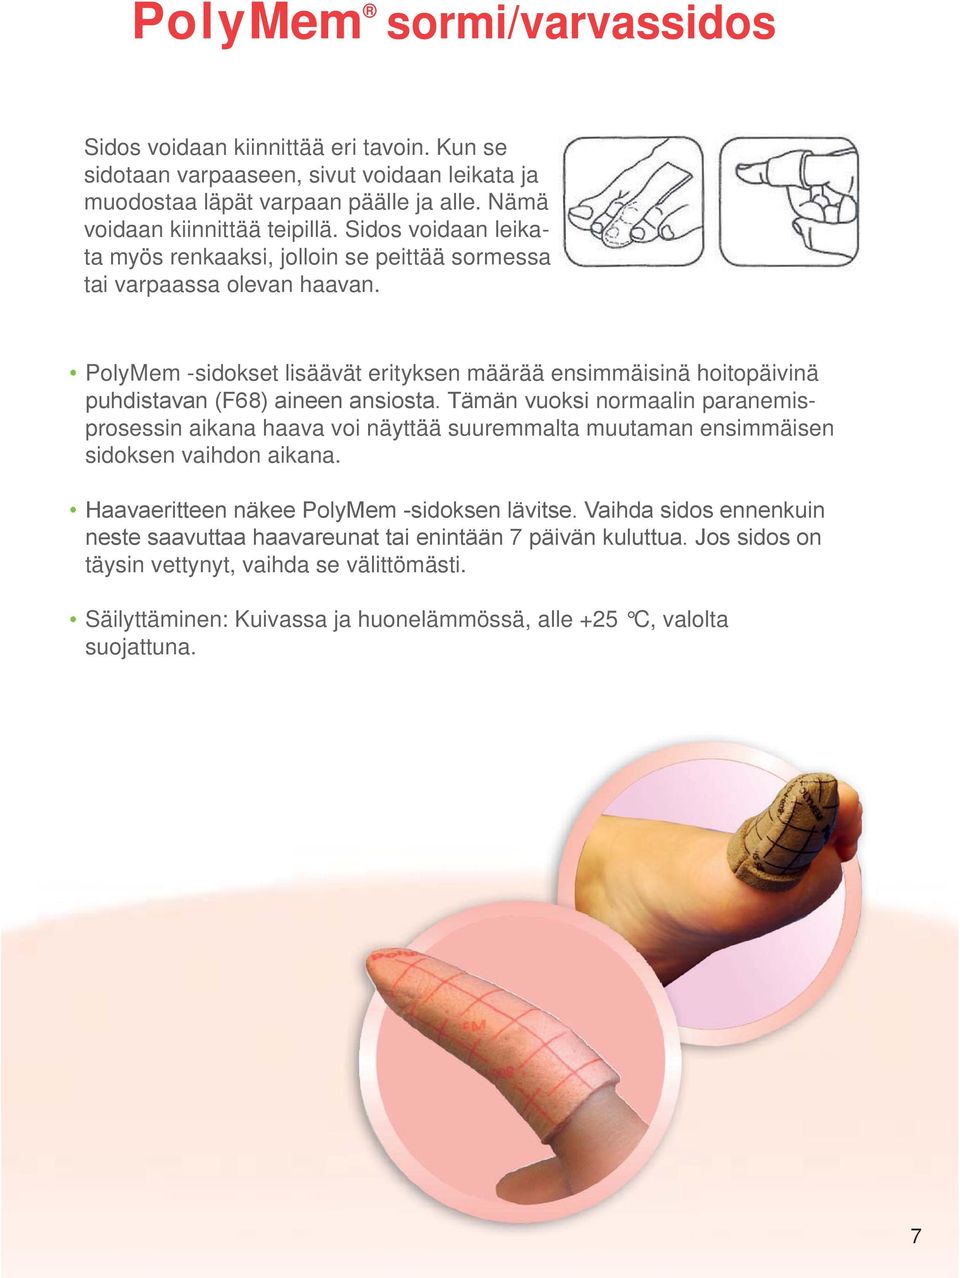 Sidos voidaan leikata myös renkaaksi, jolloin se peittää sormessa tai varpaassa olevan haavan.